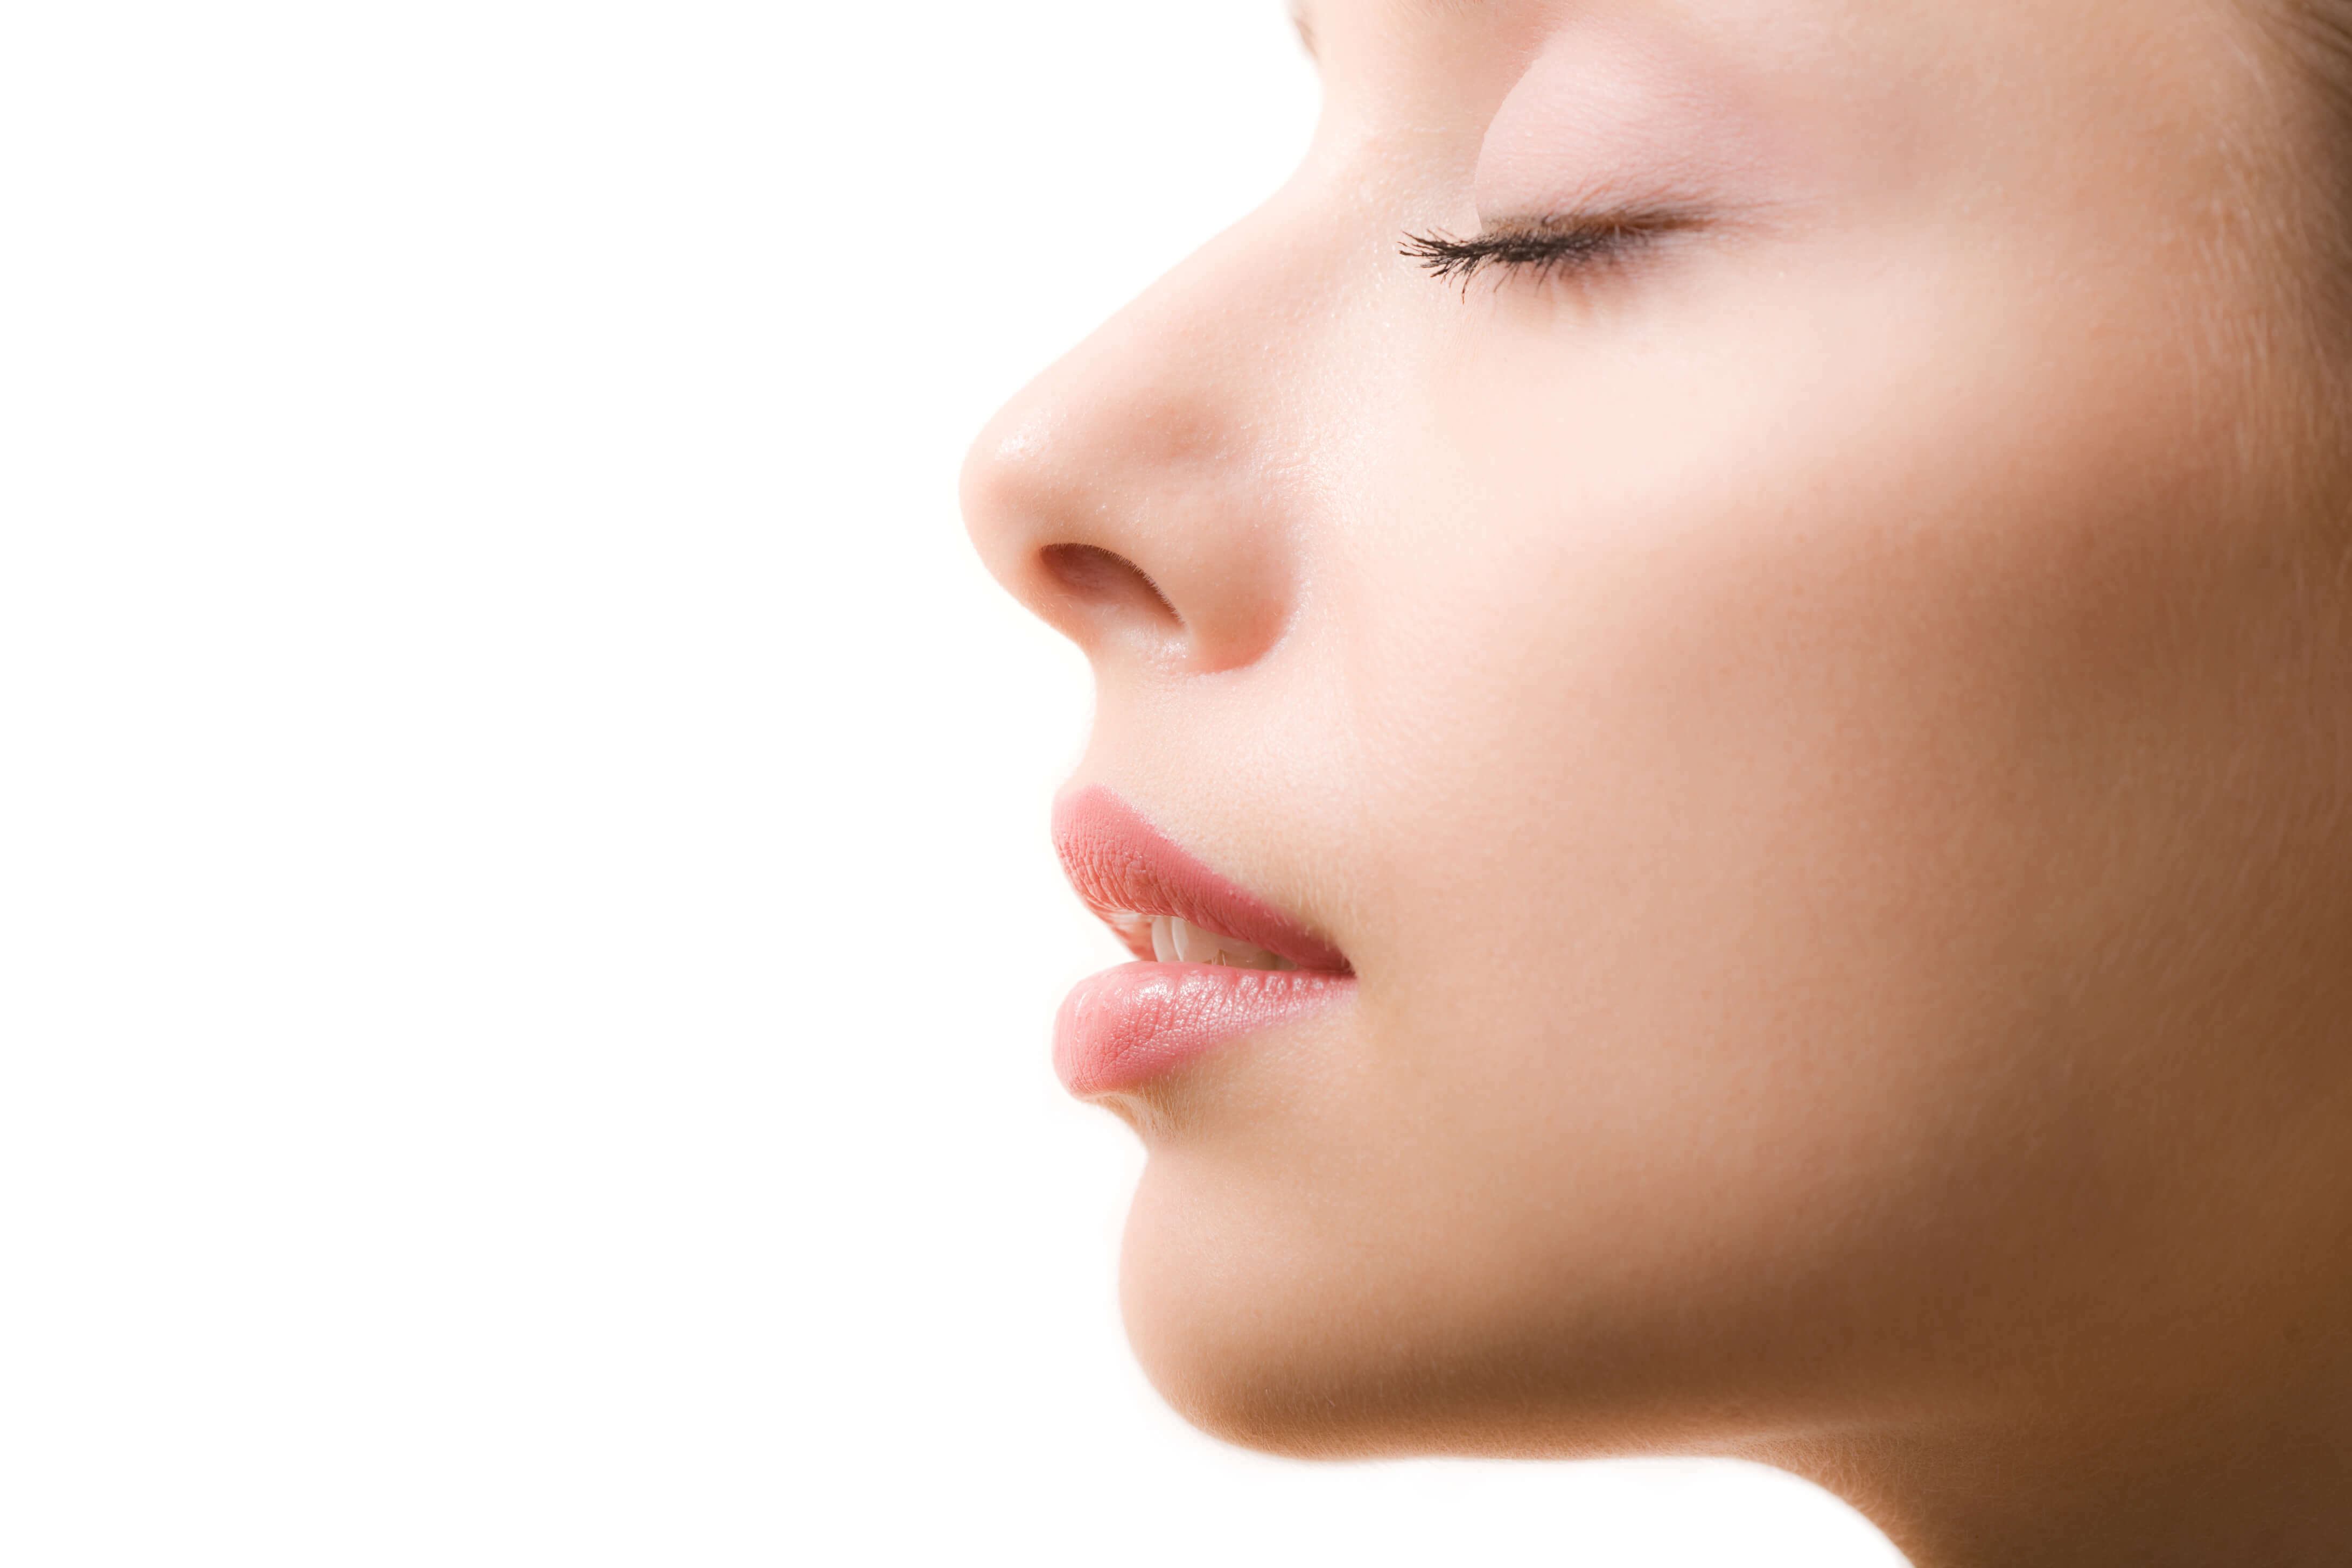 rinoplastika, hirurška korekcija nosa | estetska hirurgija, zdravlje i prevencija, magazin